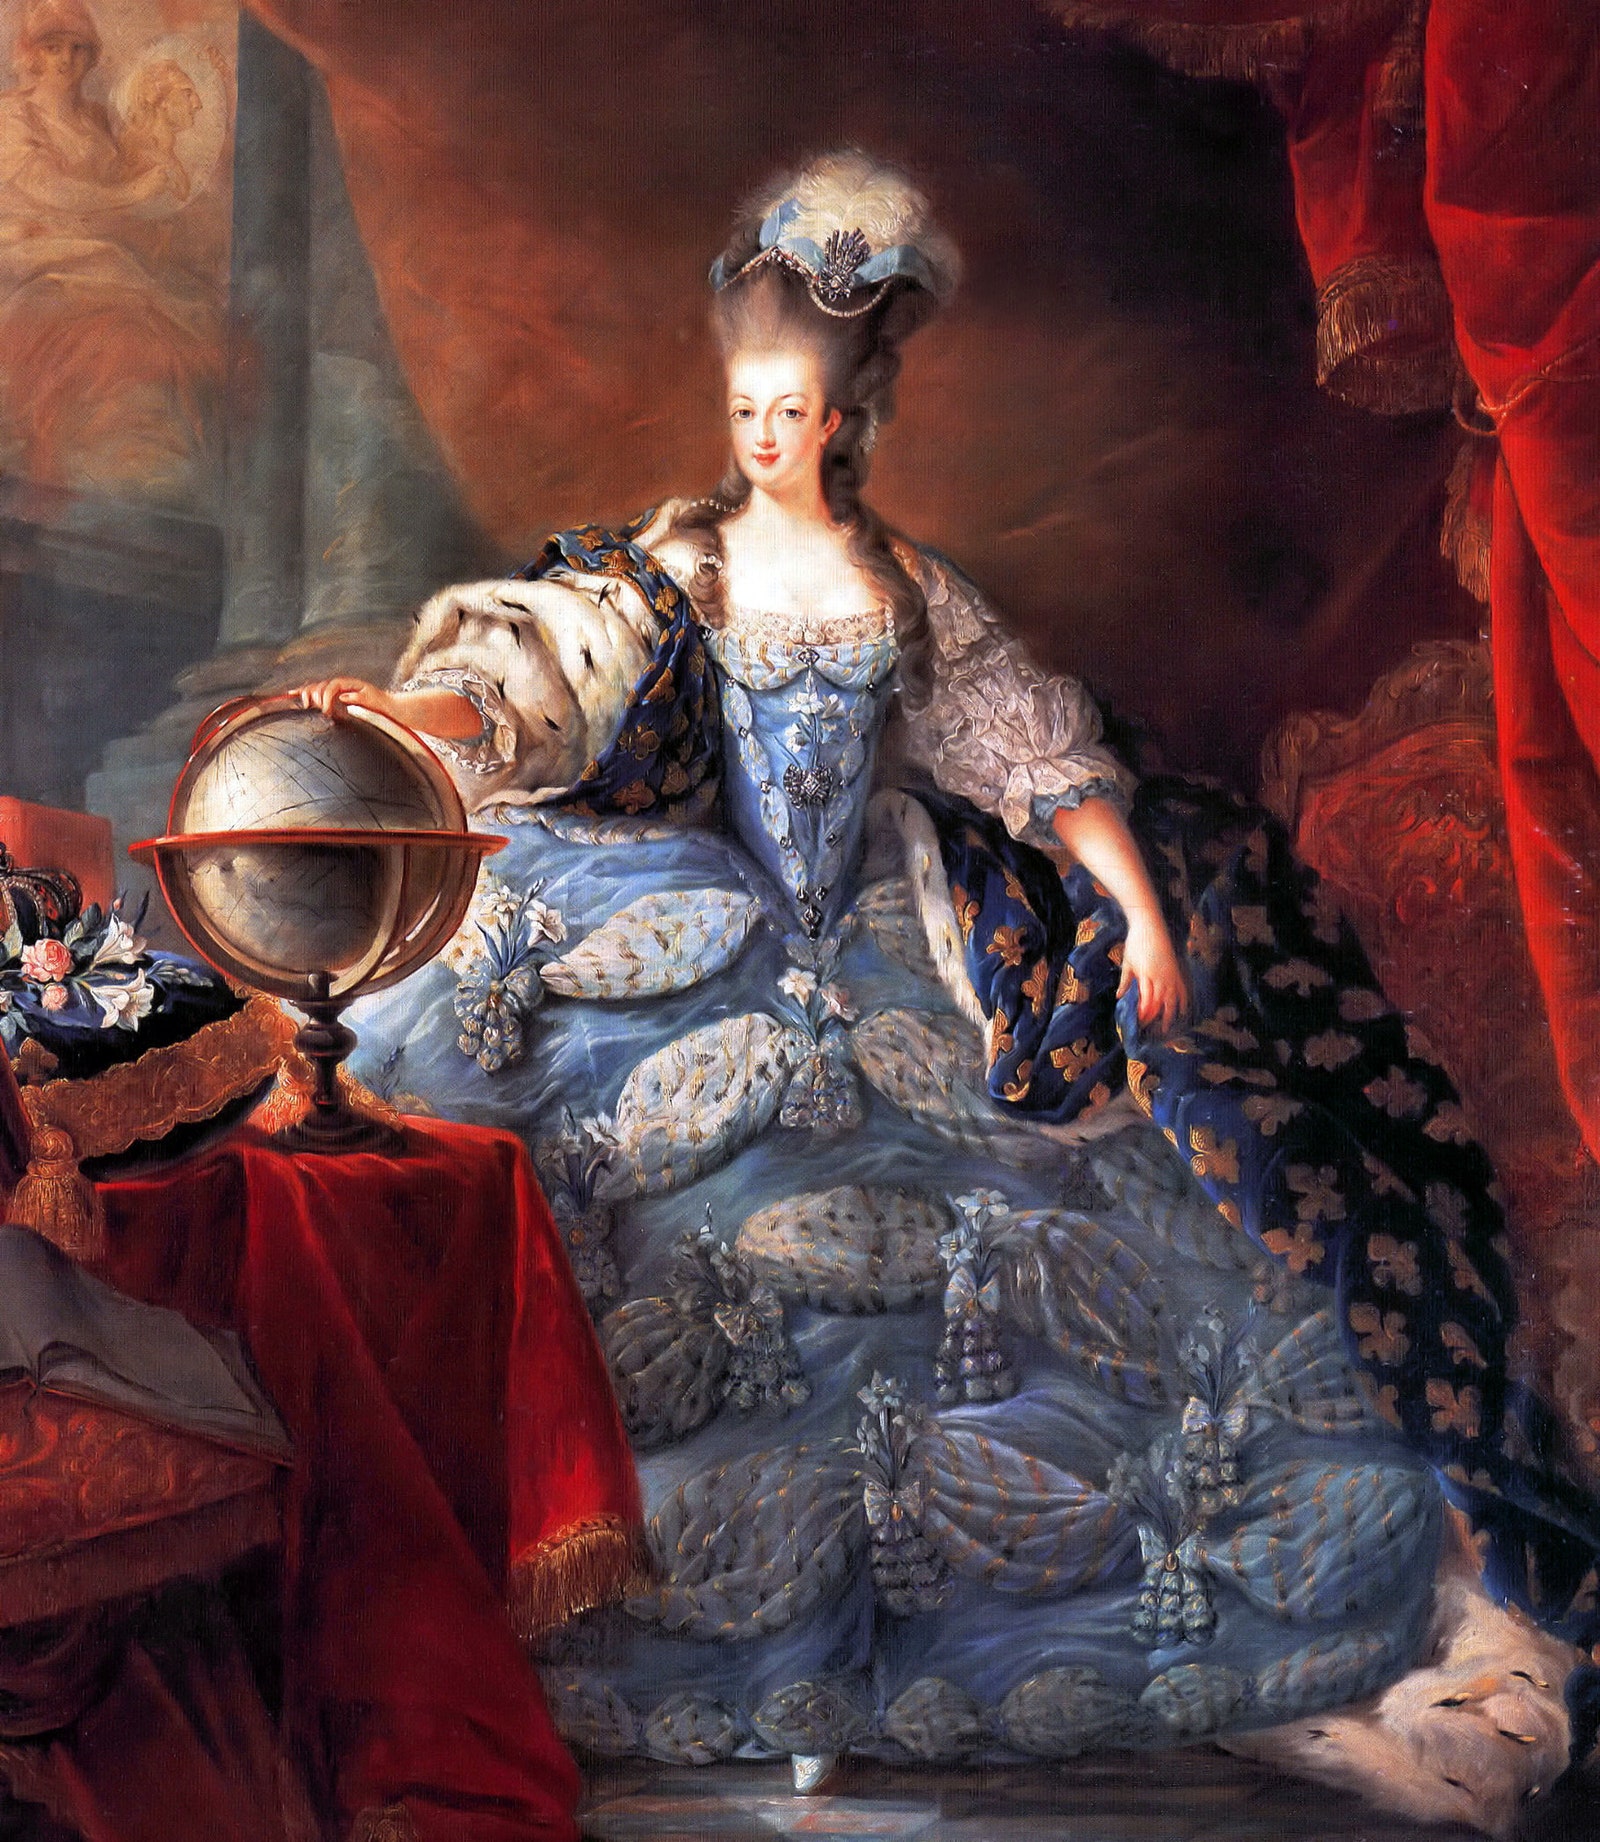 Семья Ротшильдов выставит на аукцион мебель МарииАнтуанетты и других европейских монархов